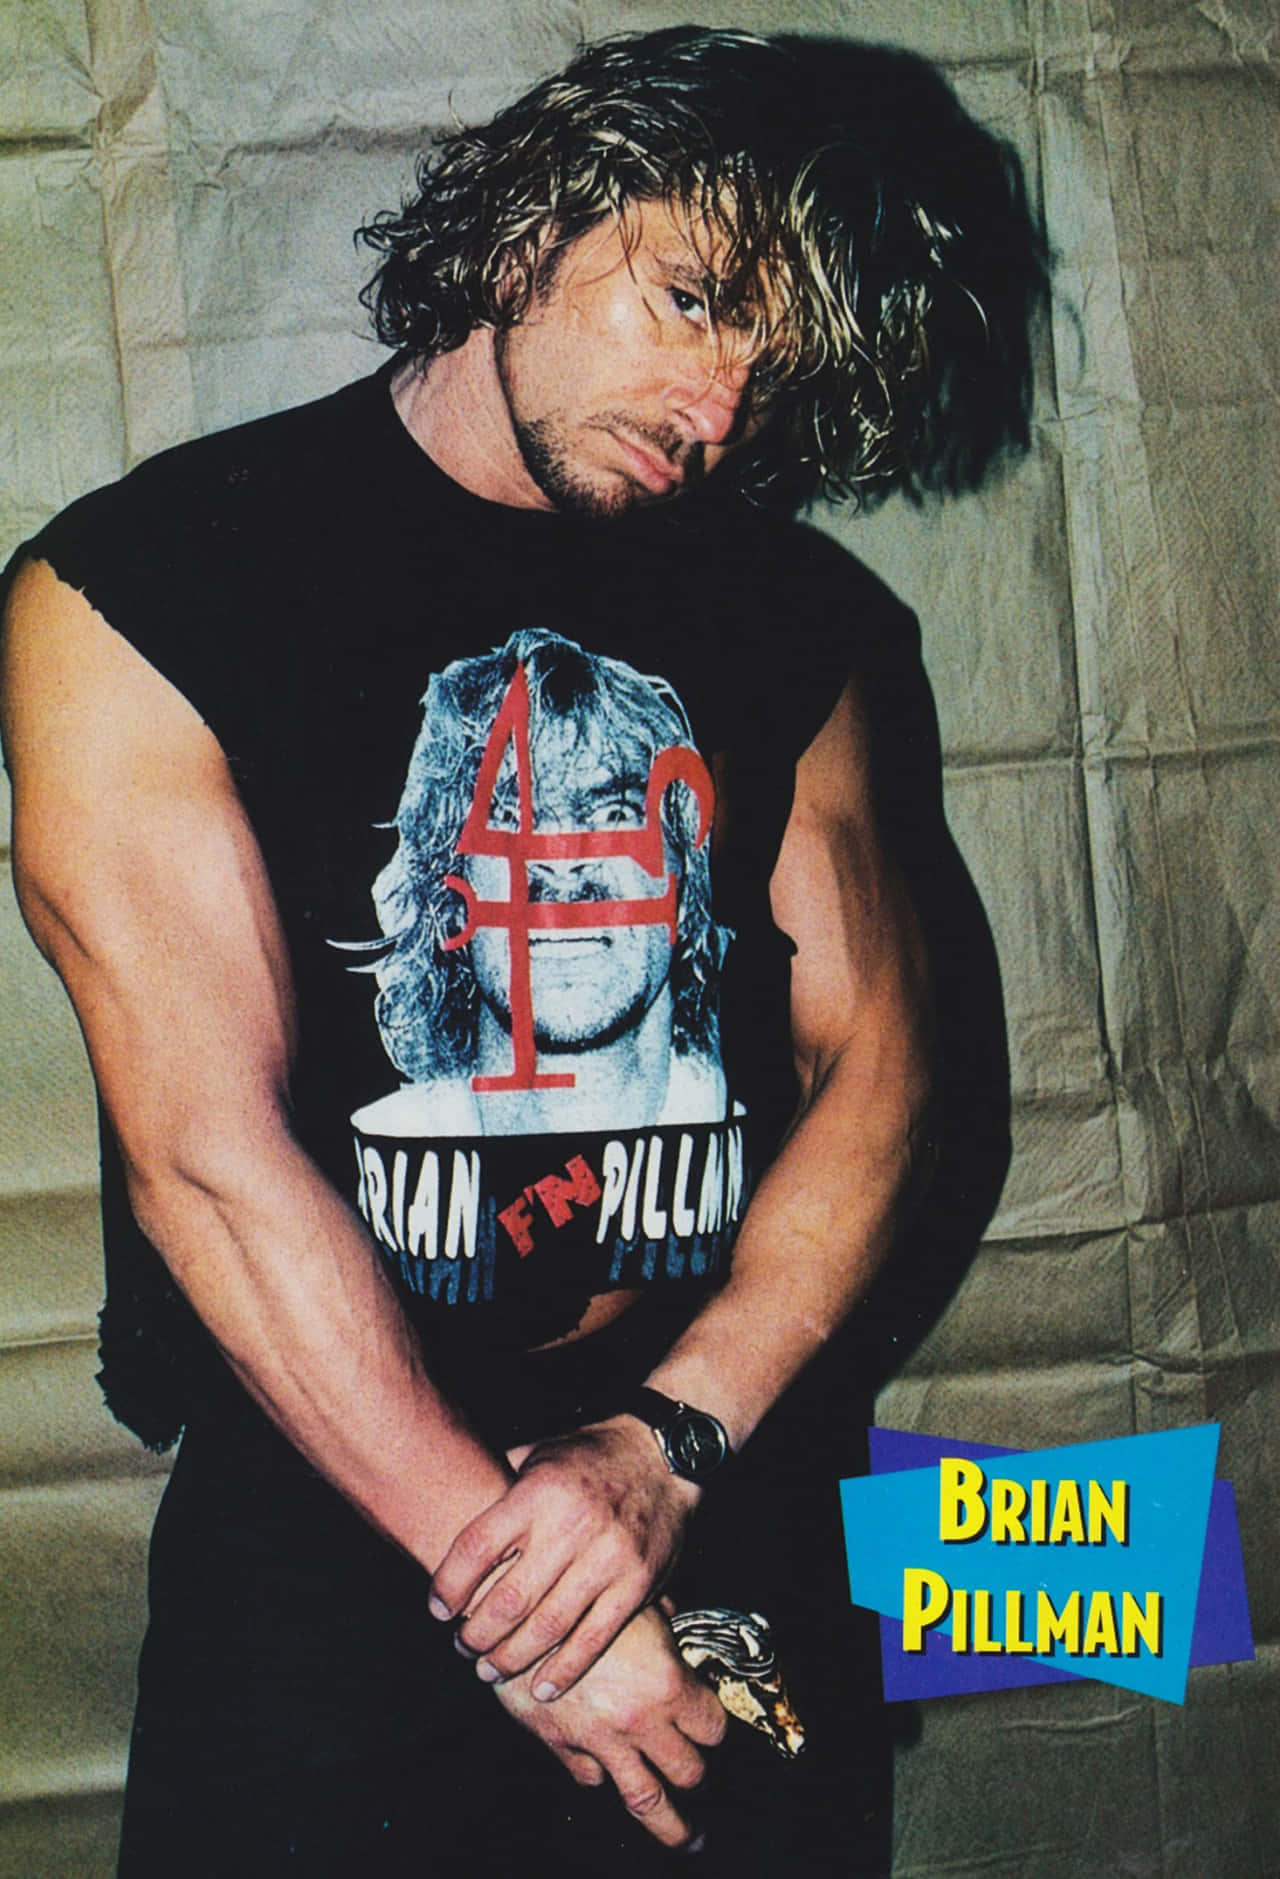 Caption: Brian Pillman, The Legendary WWE Wrestler Wallpaper